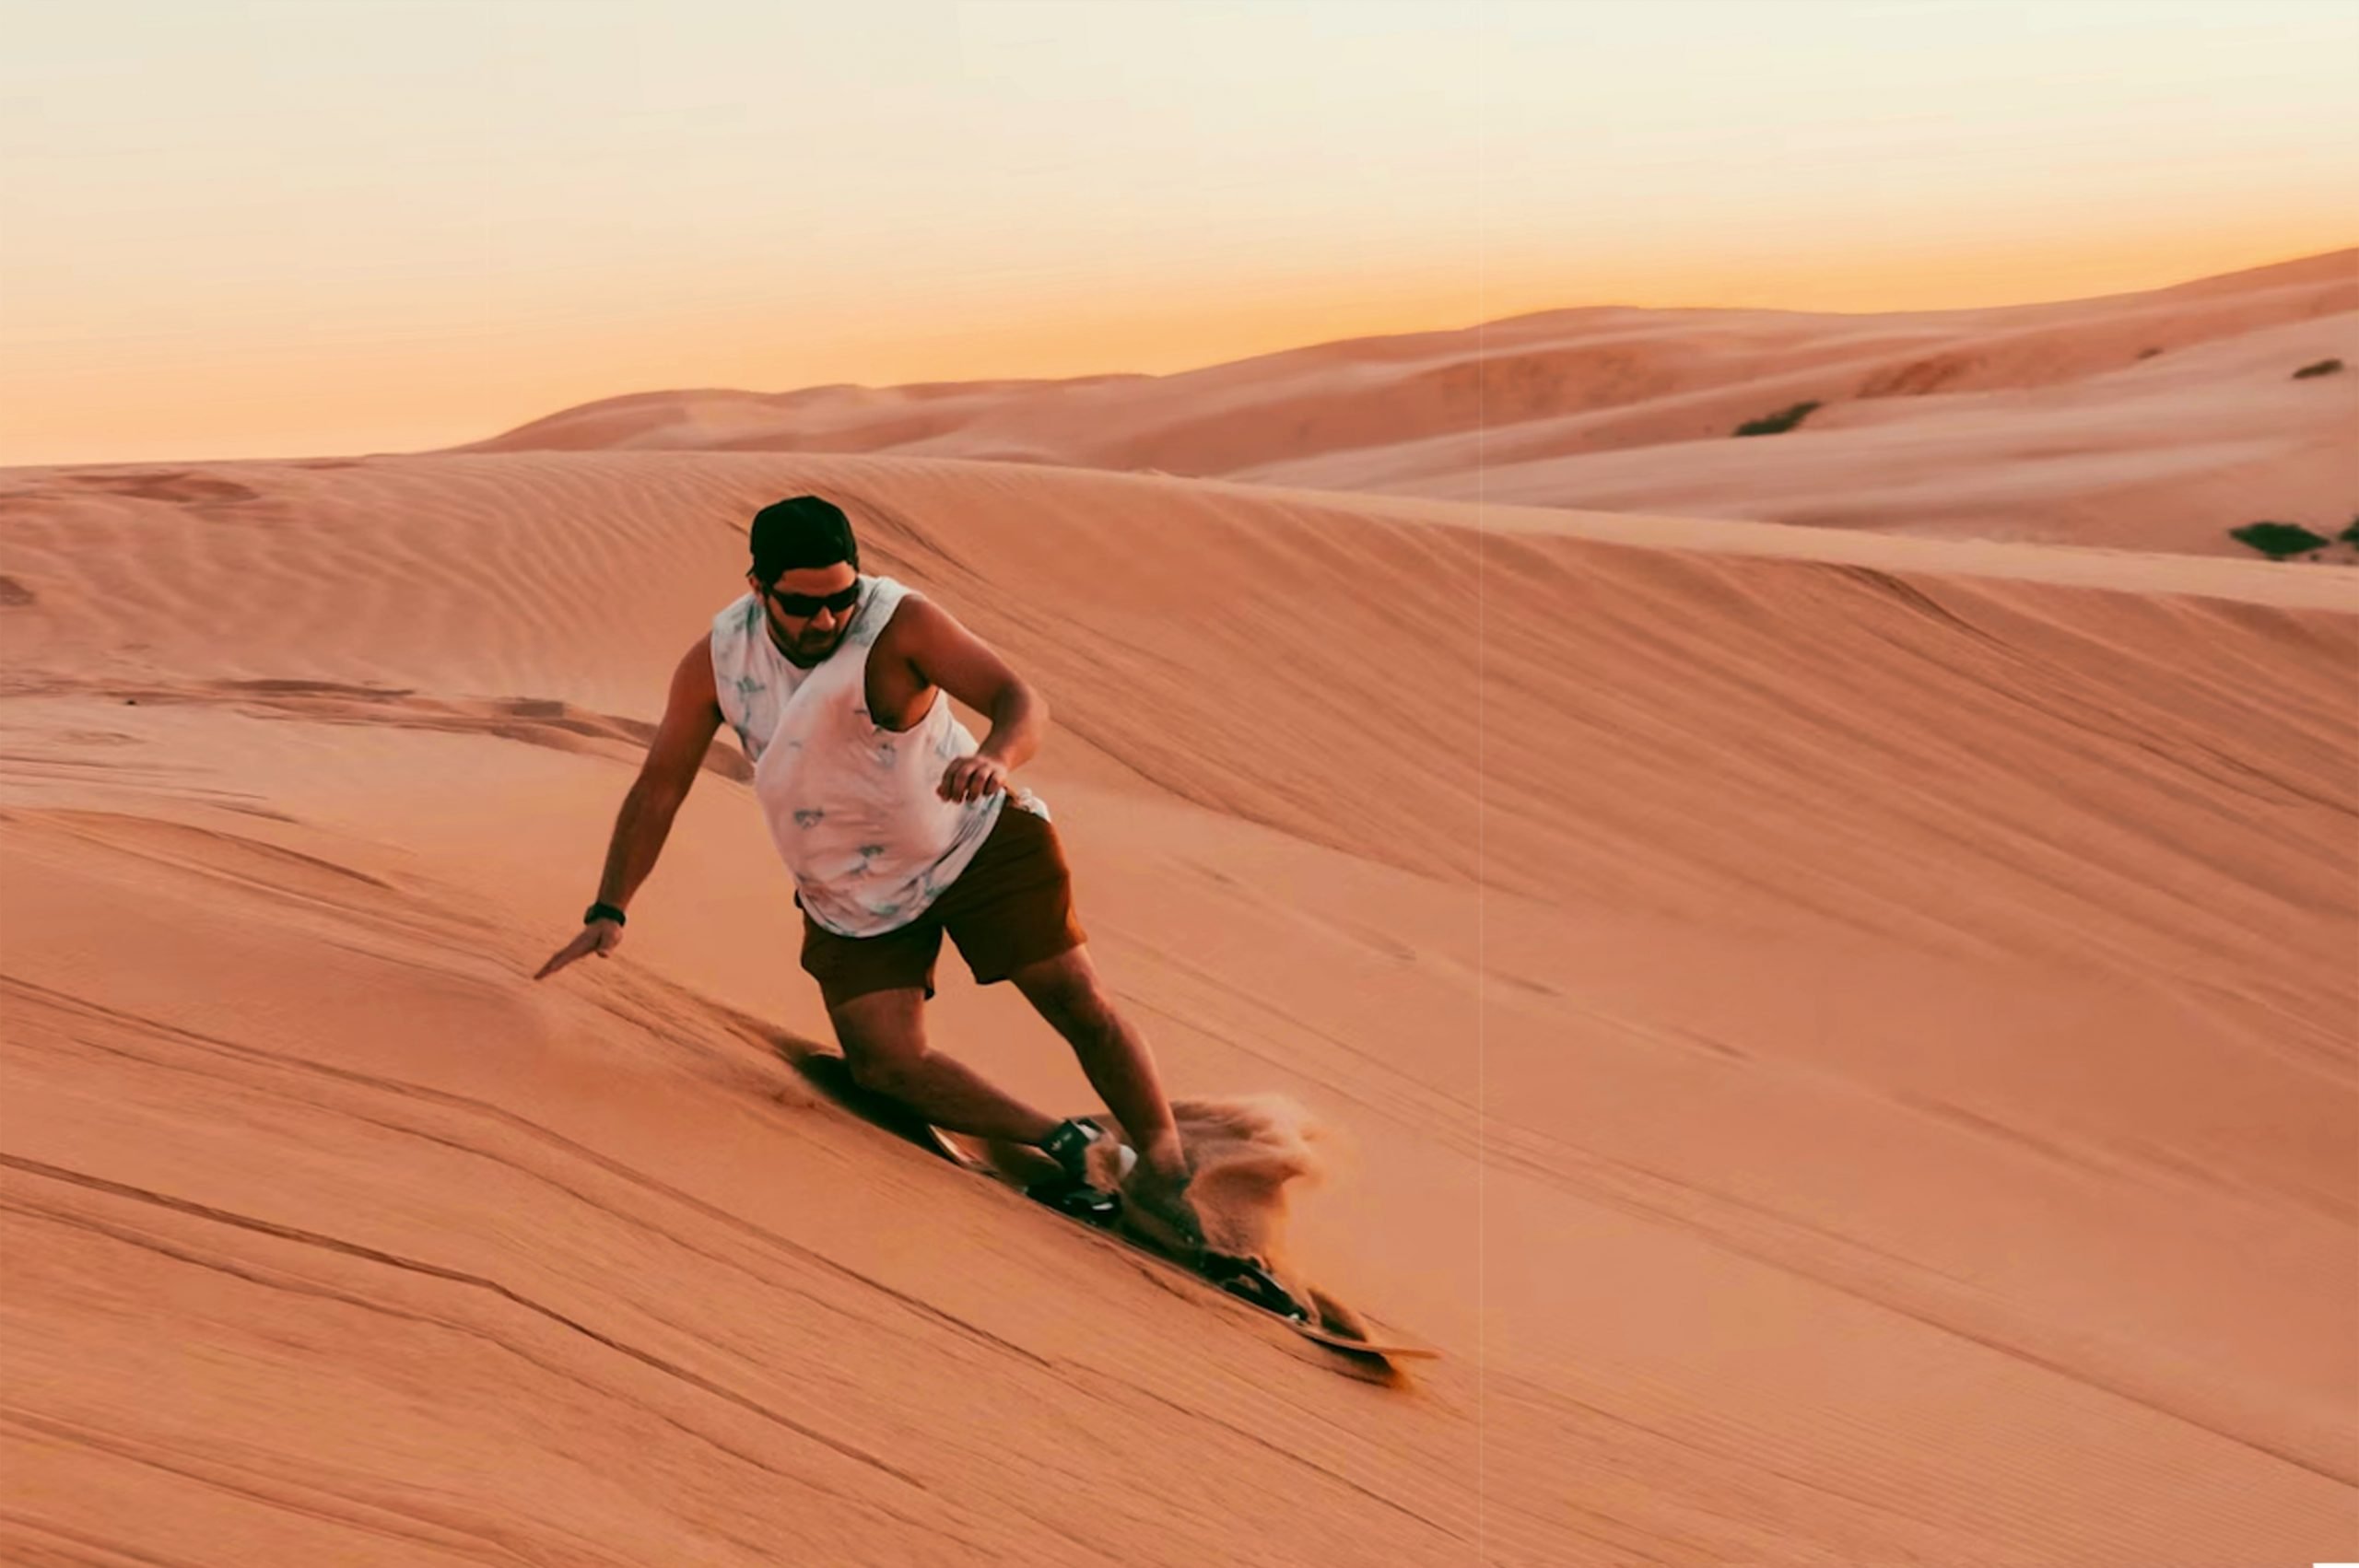 Sandboarding in the California desert